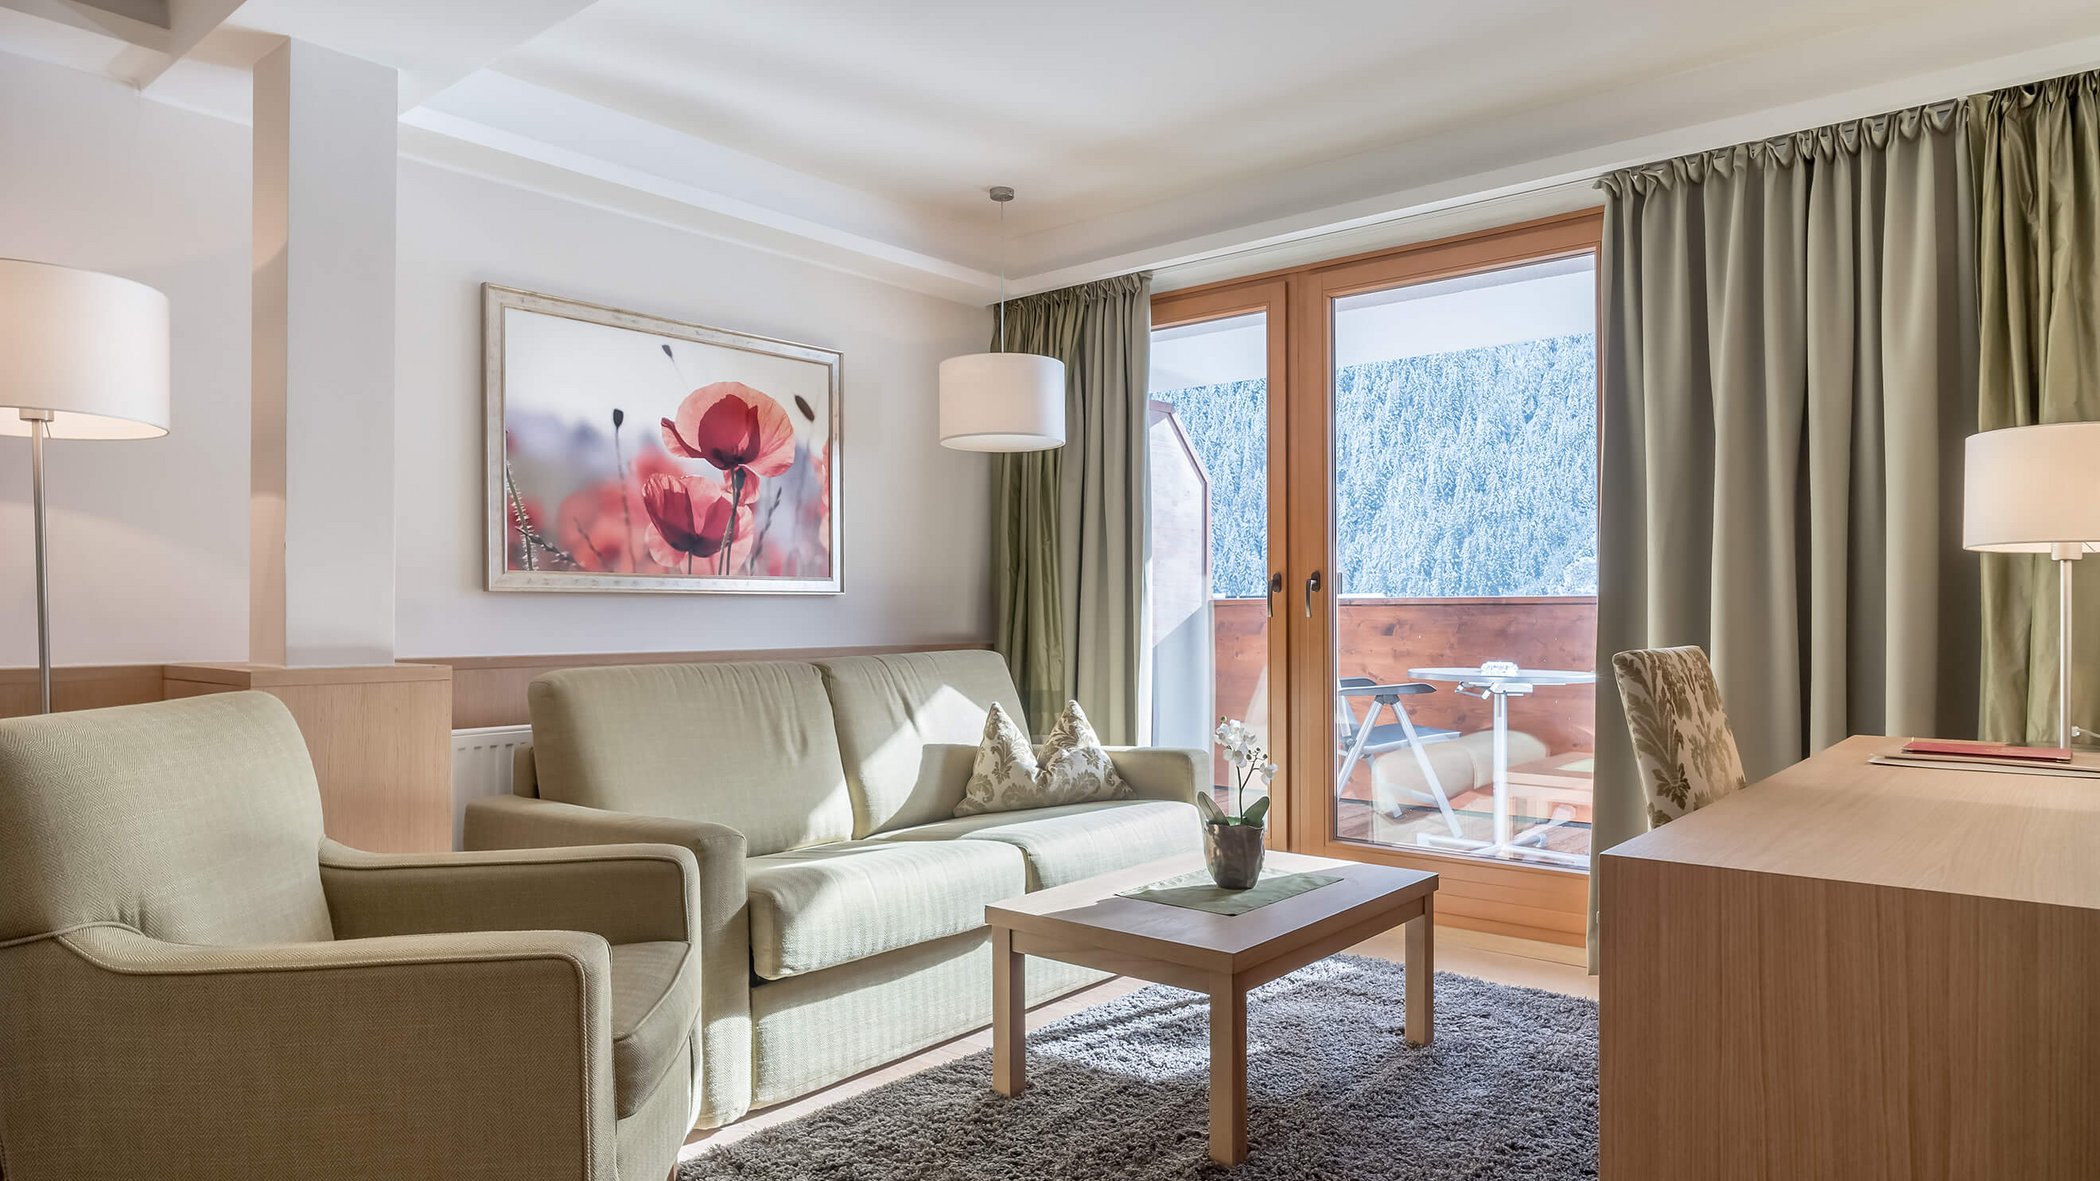 Milderer Hof, un hotel in Austria dove dormire tranquilli